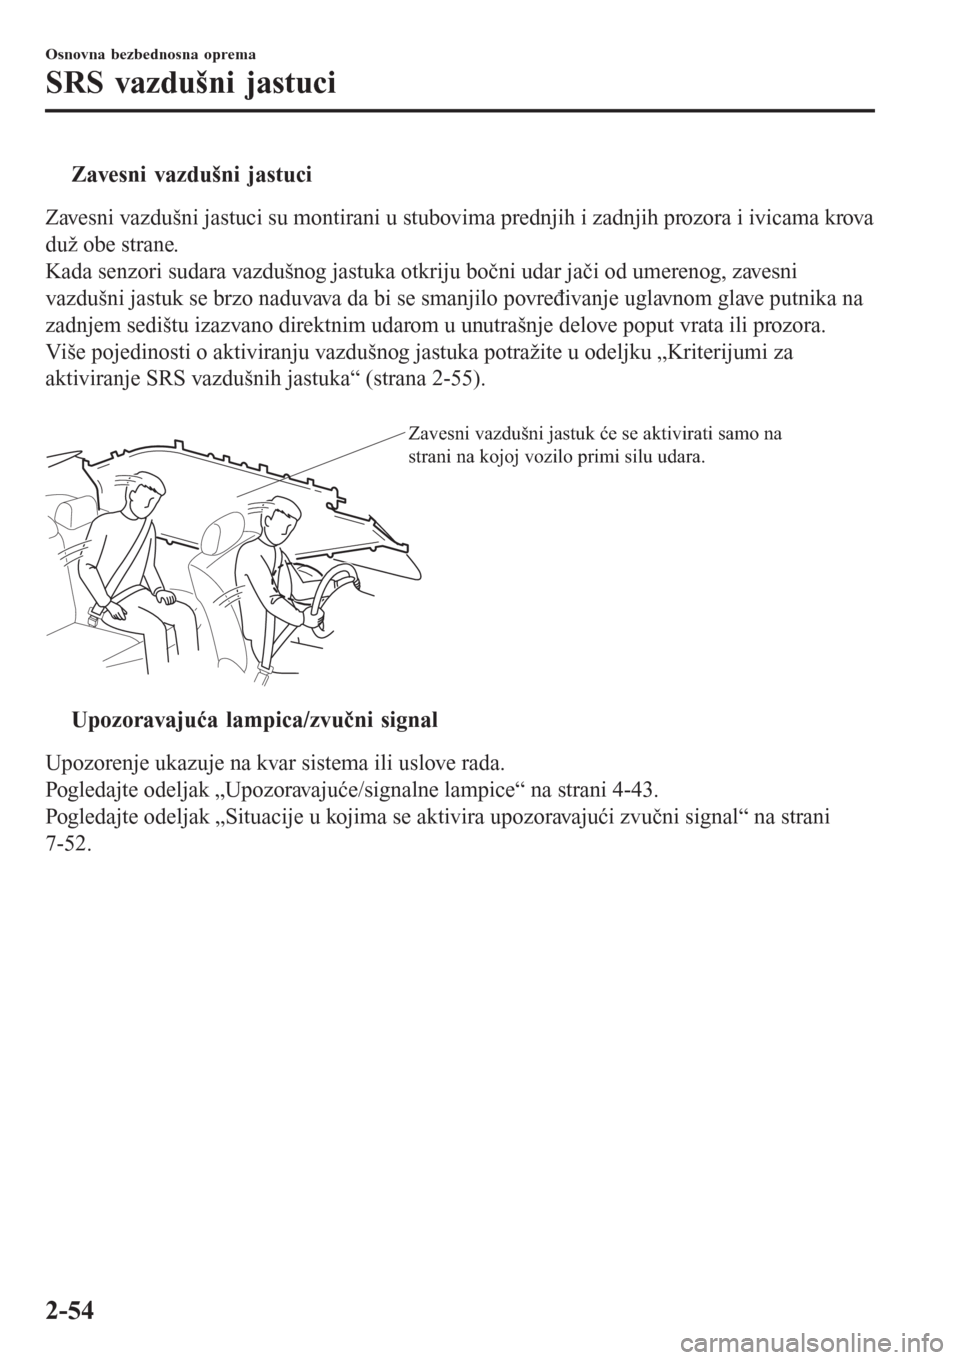 MAZDA MODEL 3 HATCHBACK 2015  Korisničko uputstvo (in Serbian) tZavesni vazdušni jastuci
Zavesni vazdušni jastuci su montirani u stubovima prednjih i zadnjih prozora i ivicama krova
duž obe strane.
Kada senzori sudara vazdušnog jastuka otkriju bočni udar ja�